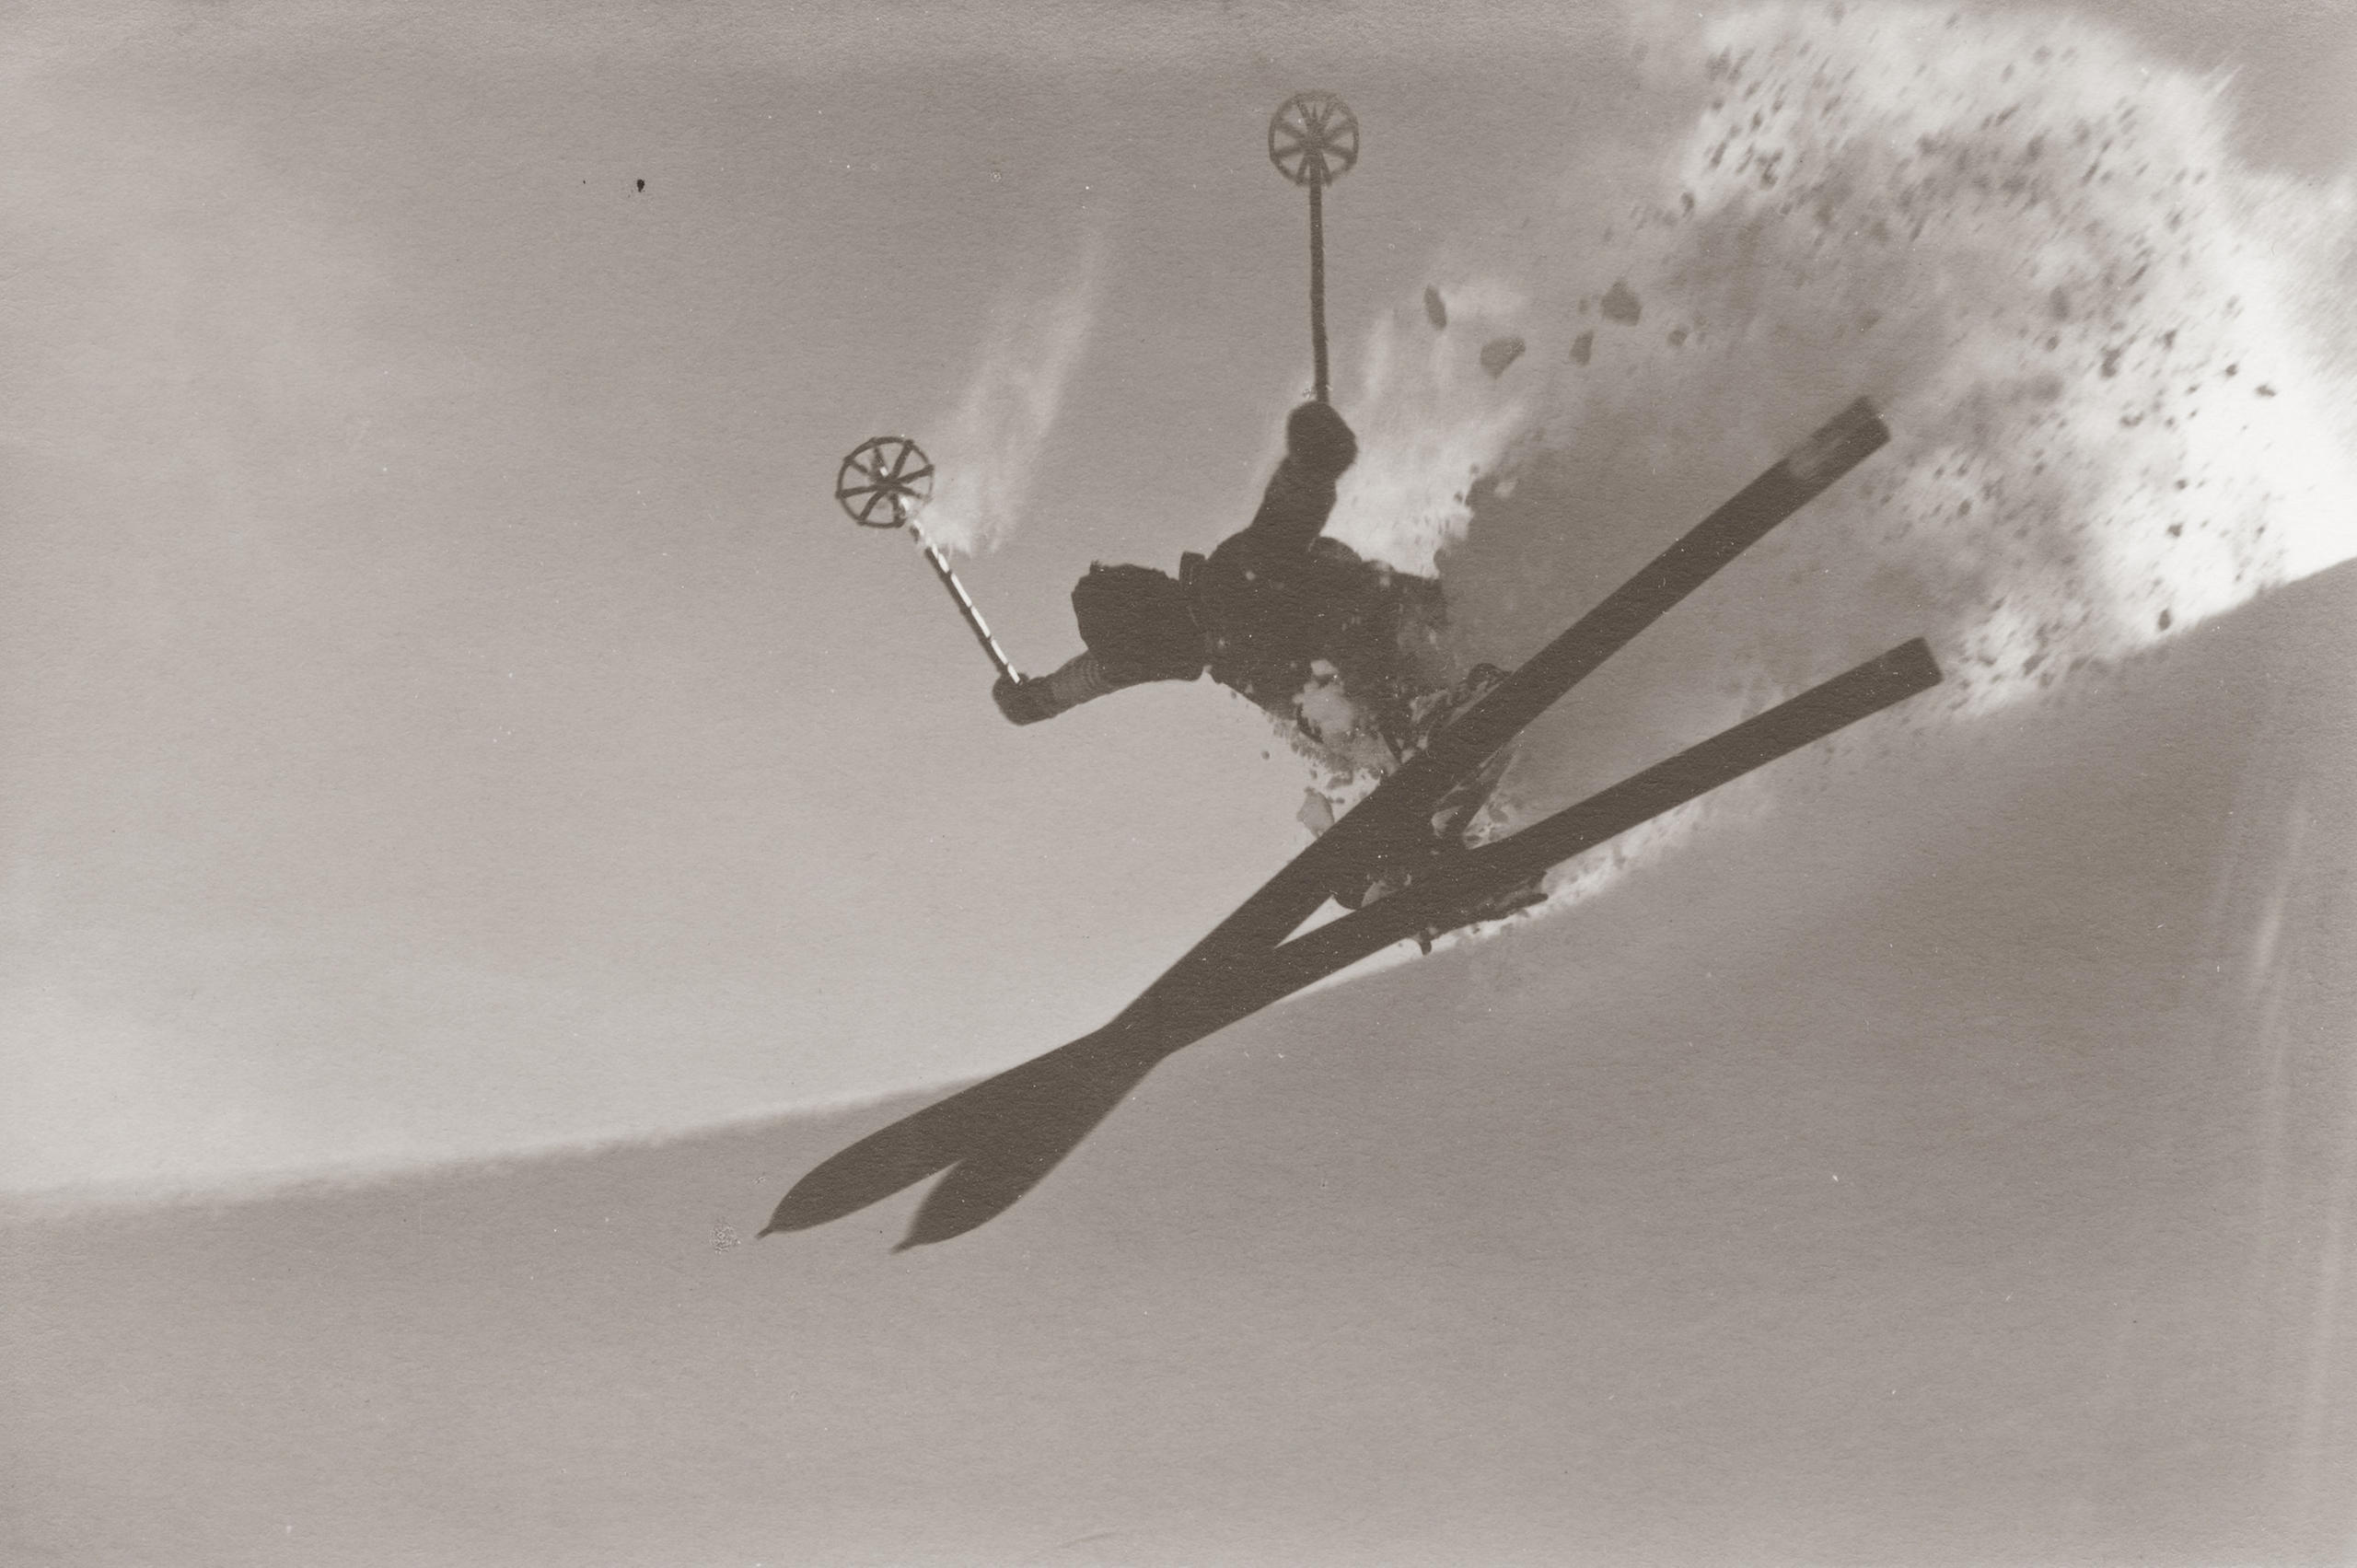 Skifahrer macht Sprungfigur